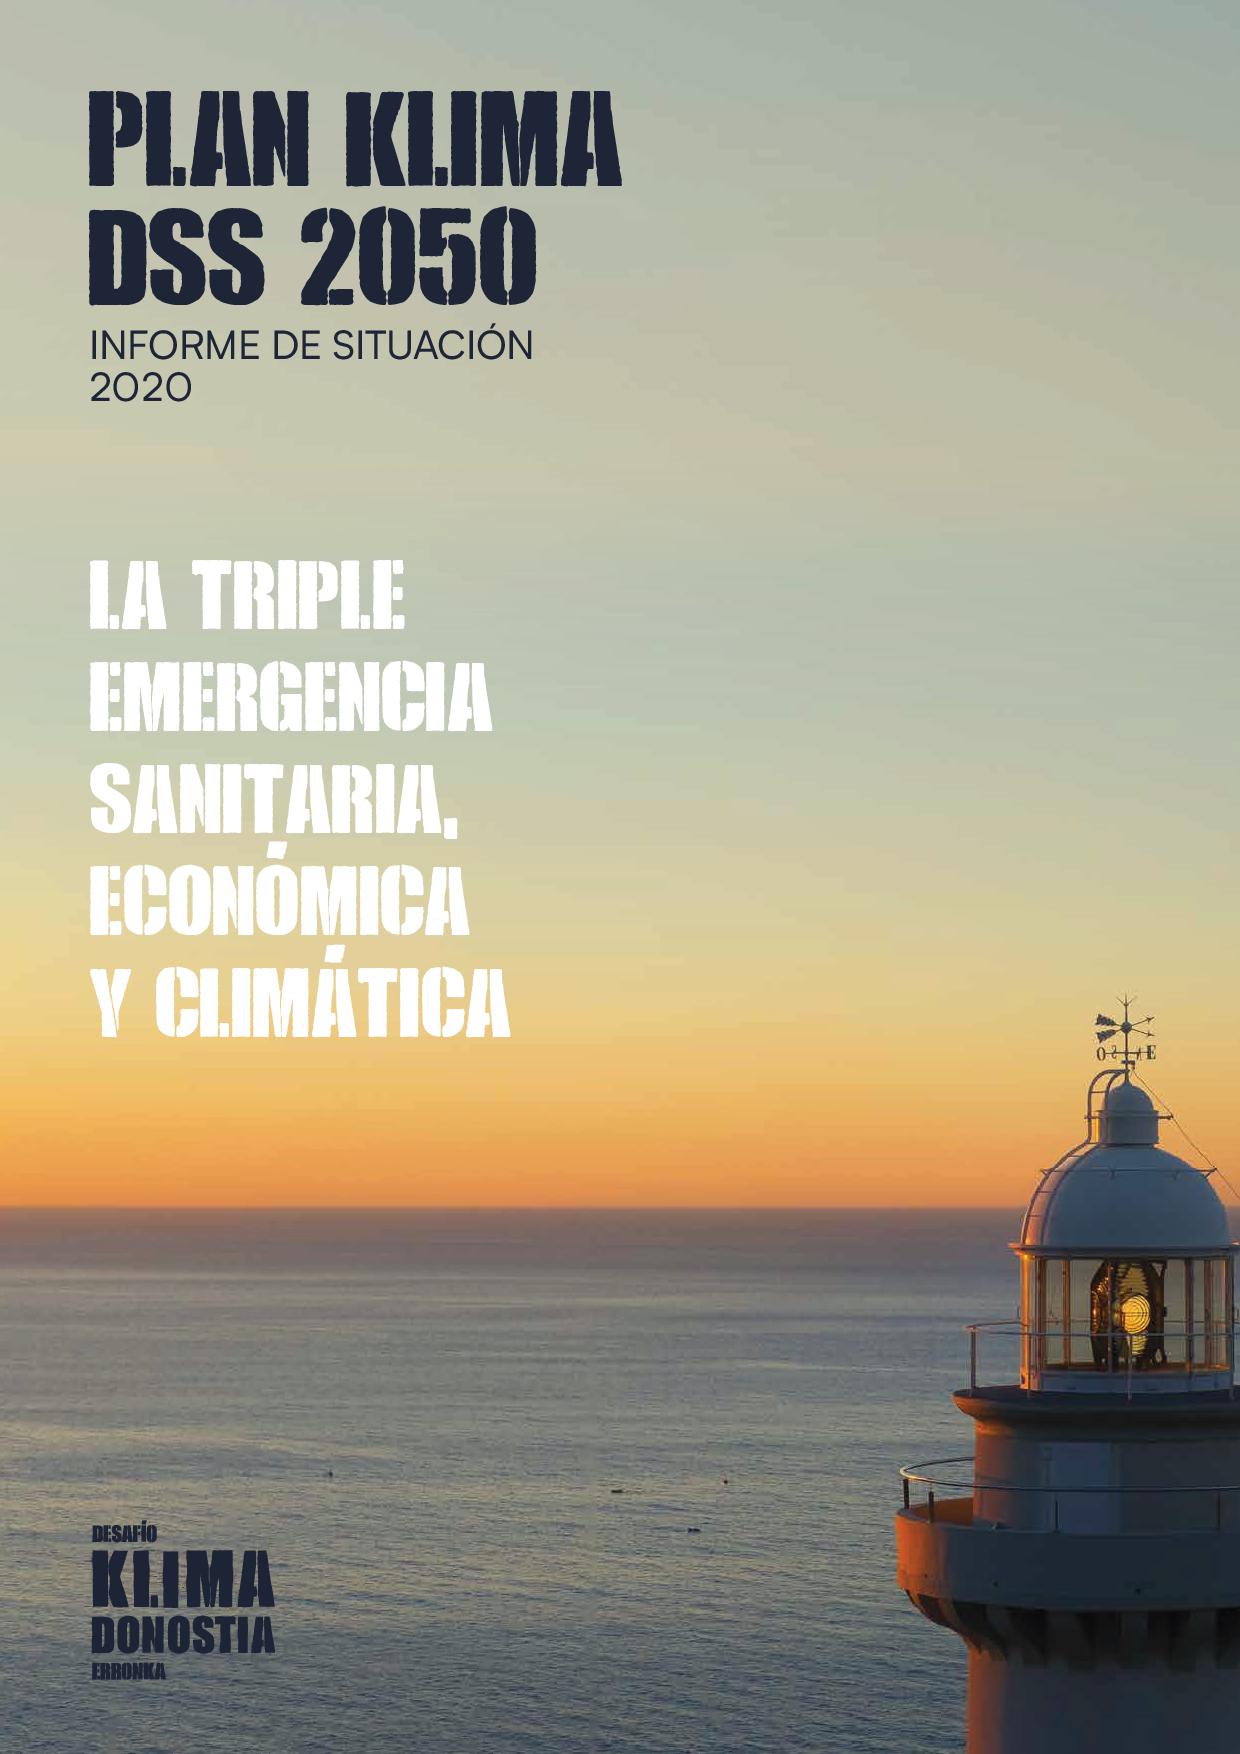 Plan klima DSS 2050